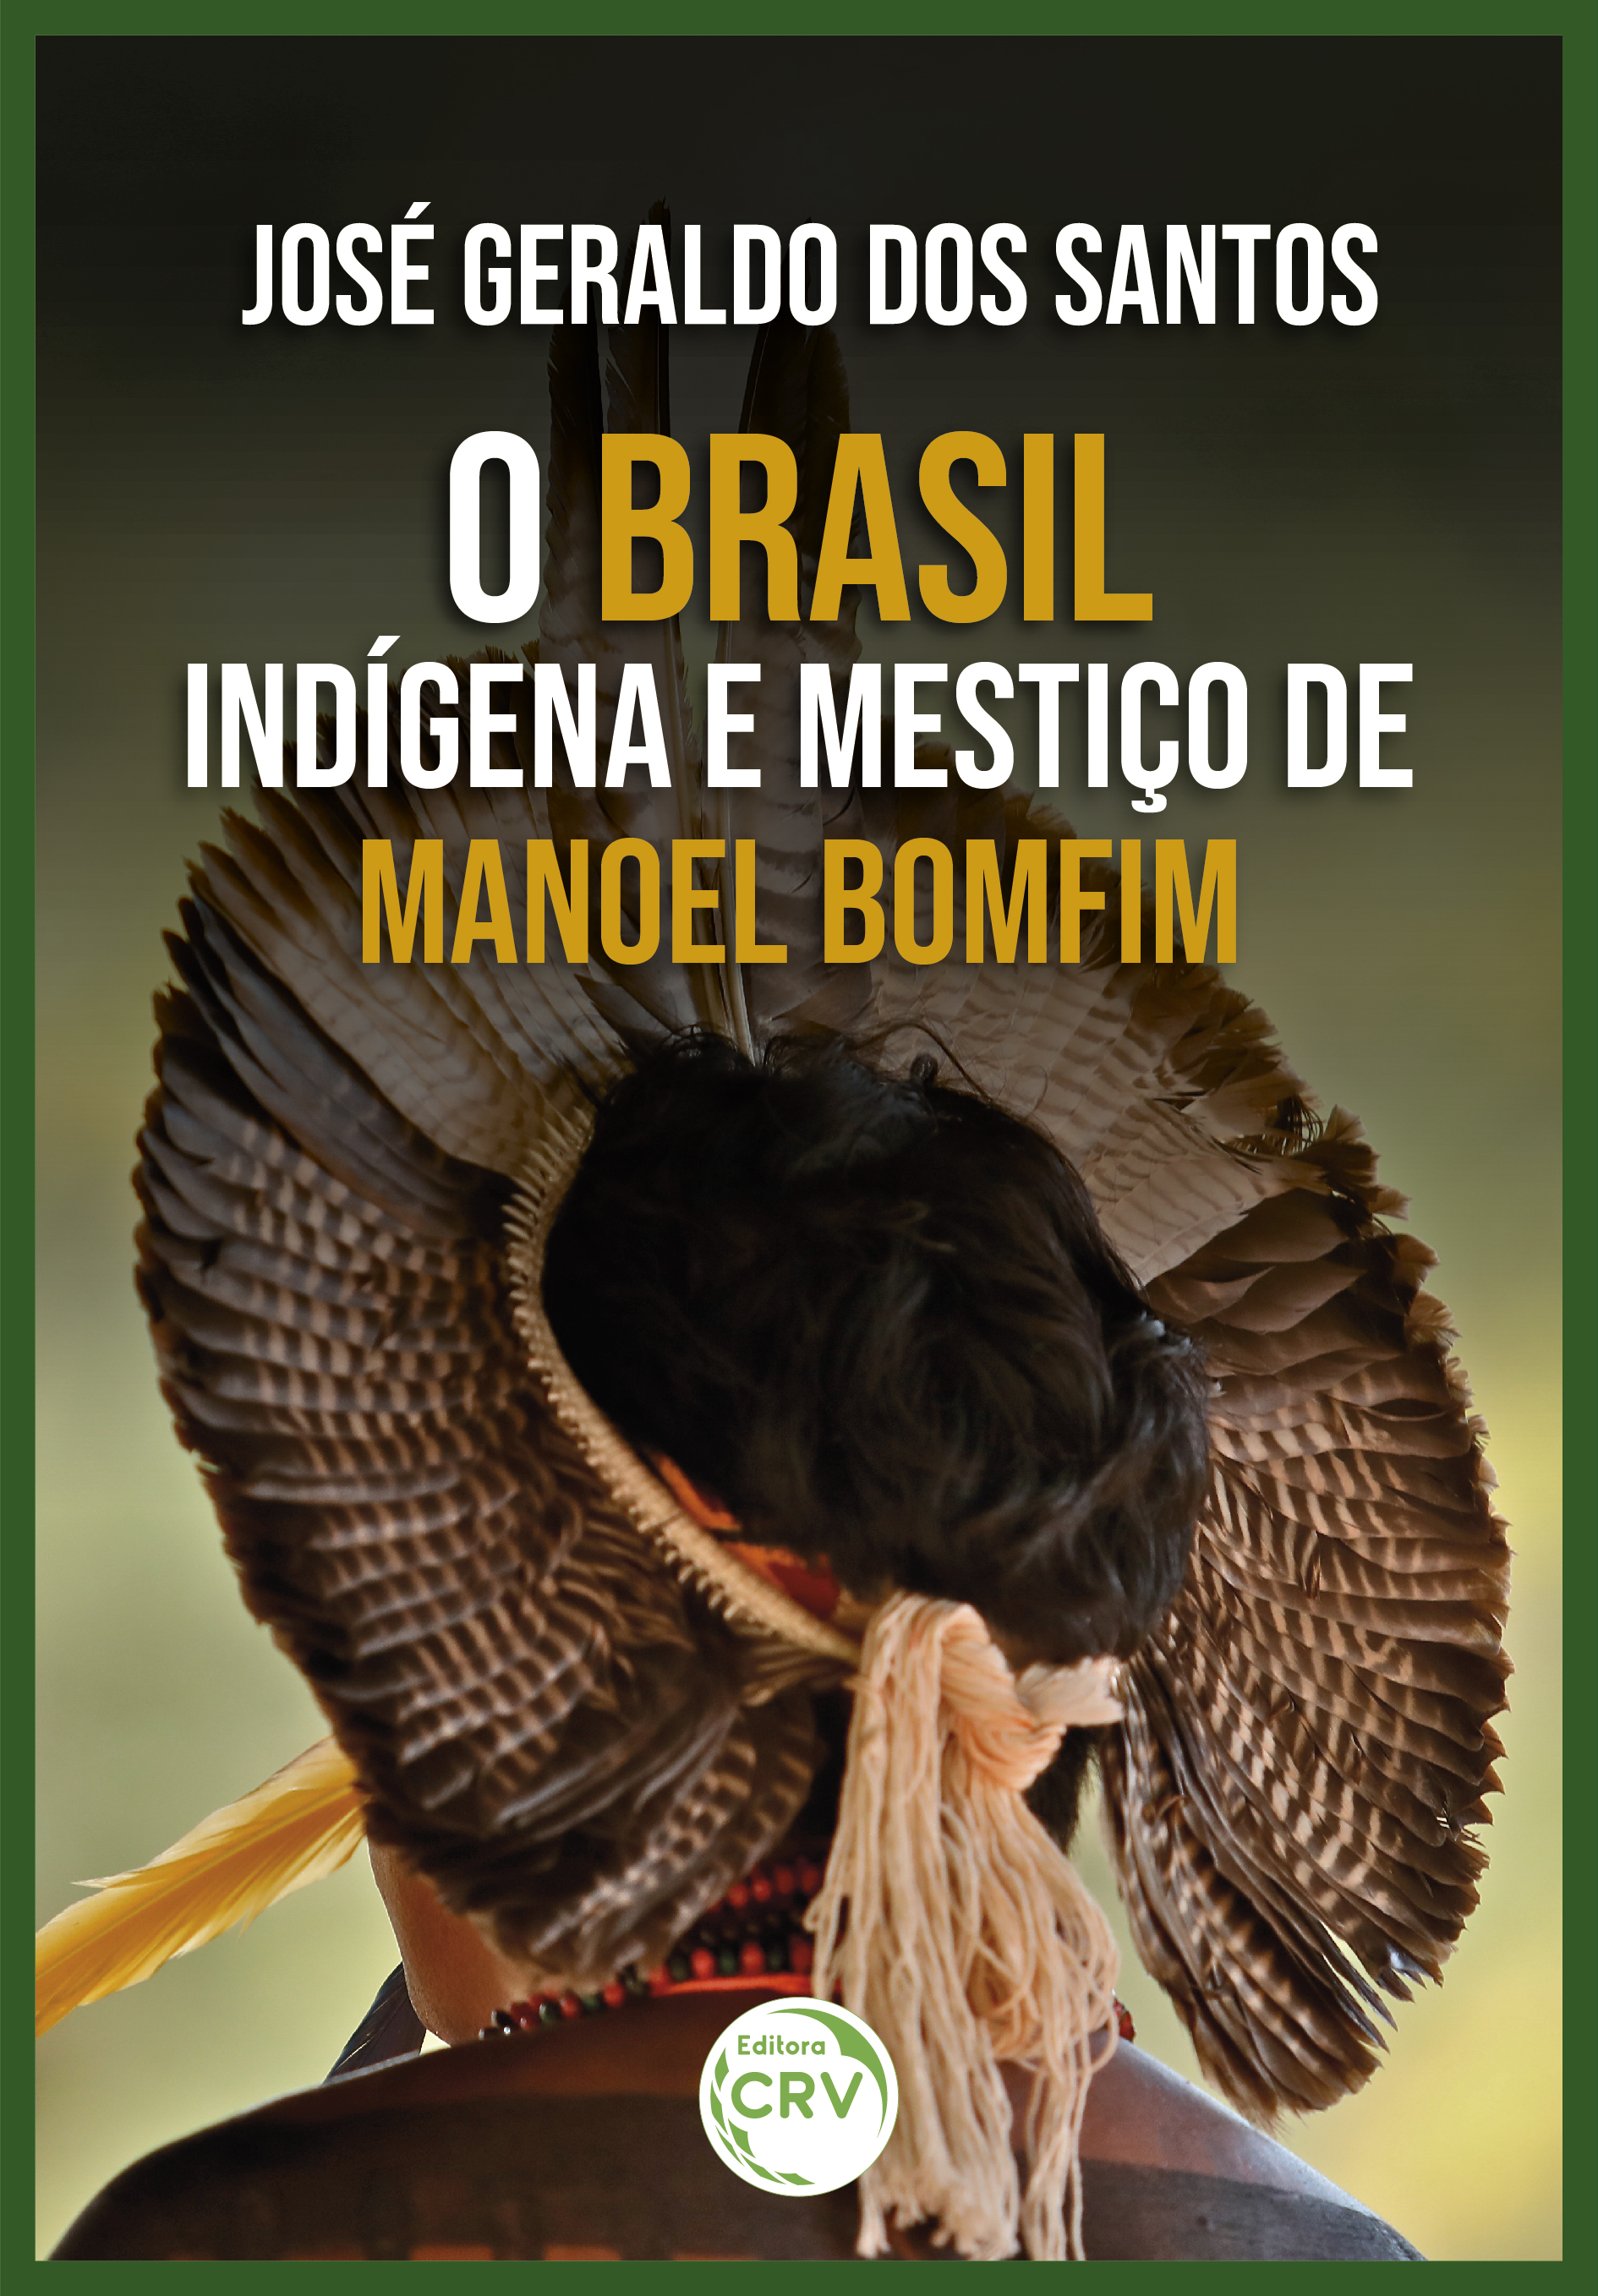 Capa do livro: O BRASIL INDÍGENA E MESTIÇO DE MANOEL BOMFIM